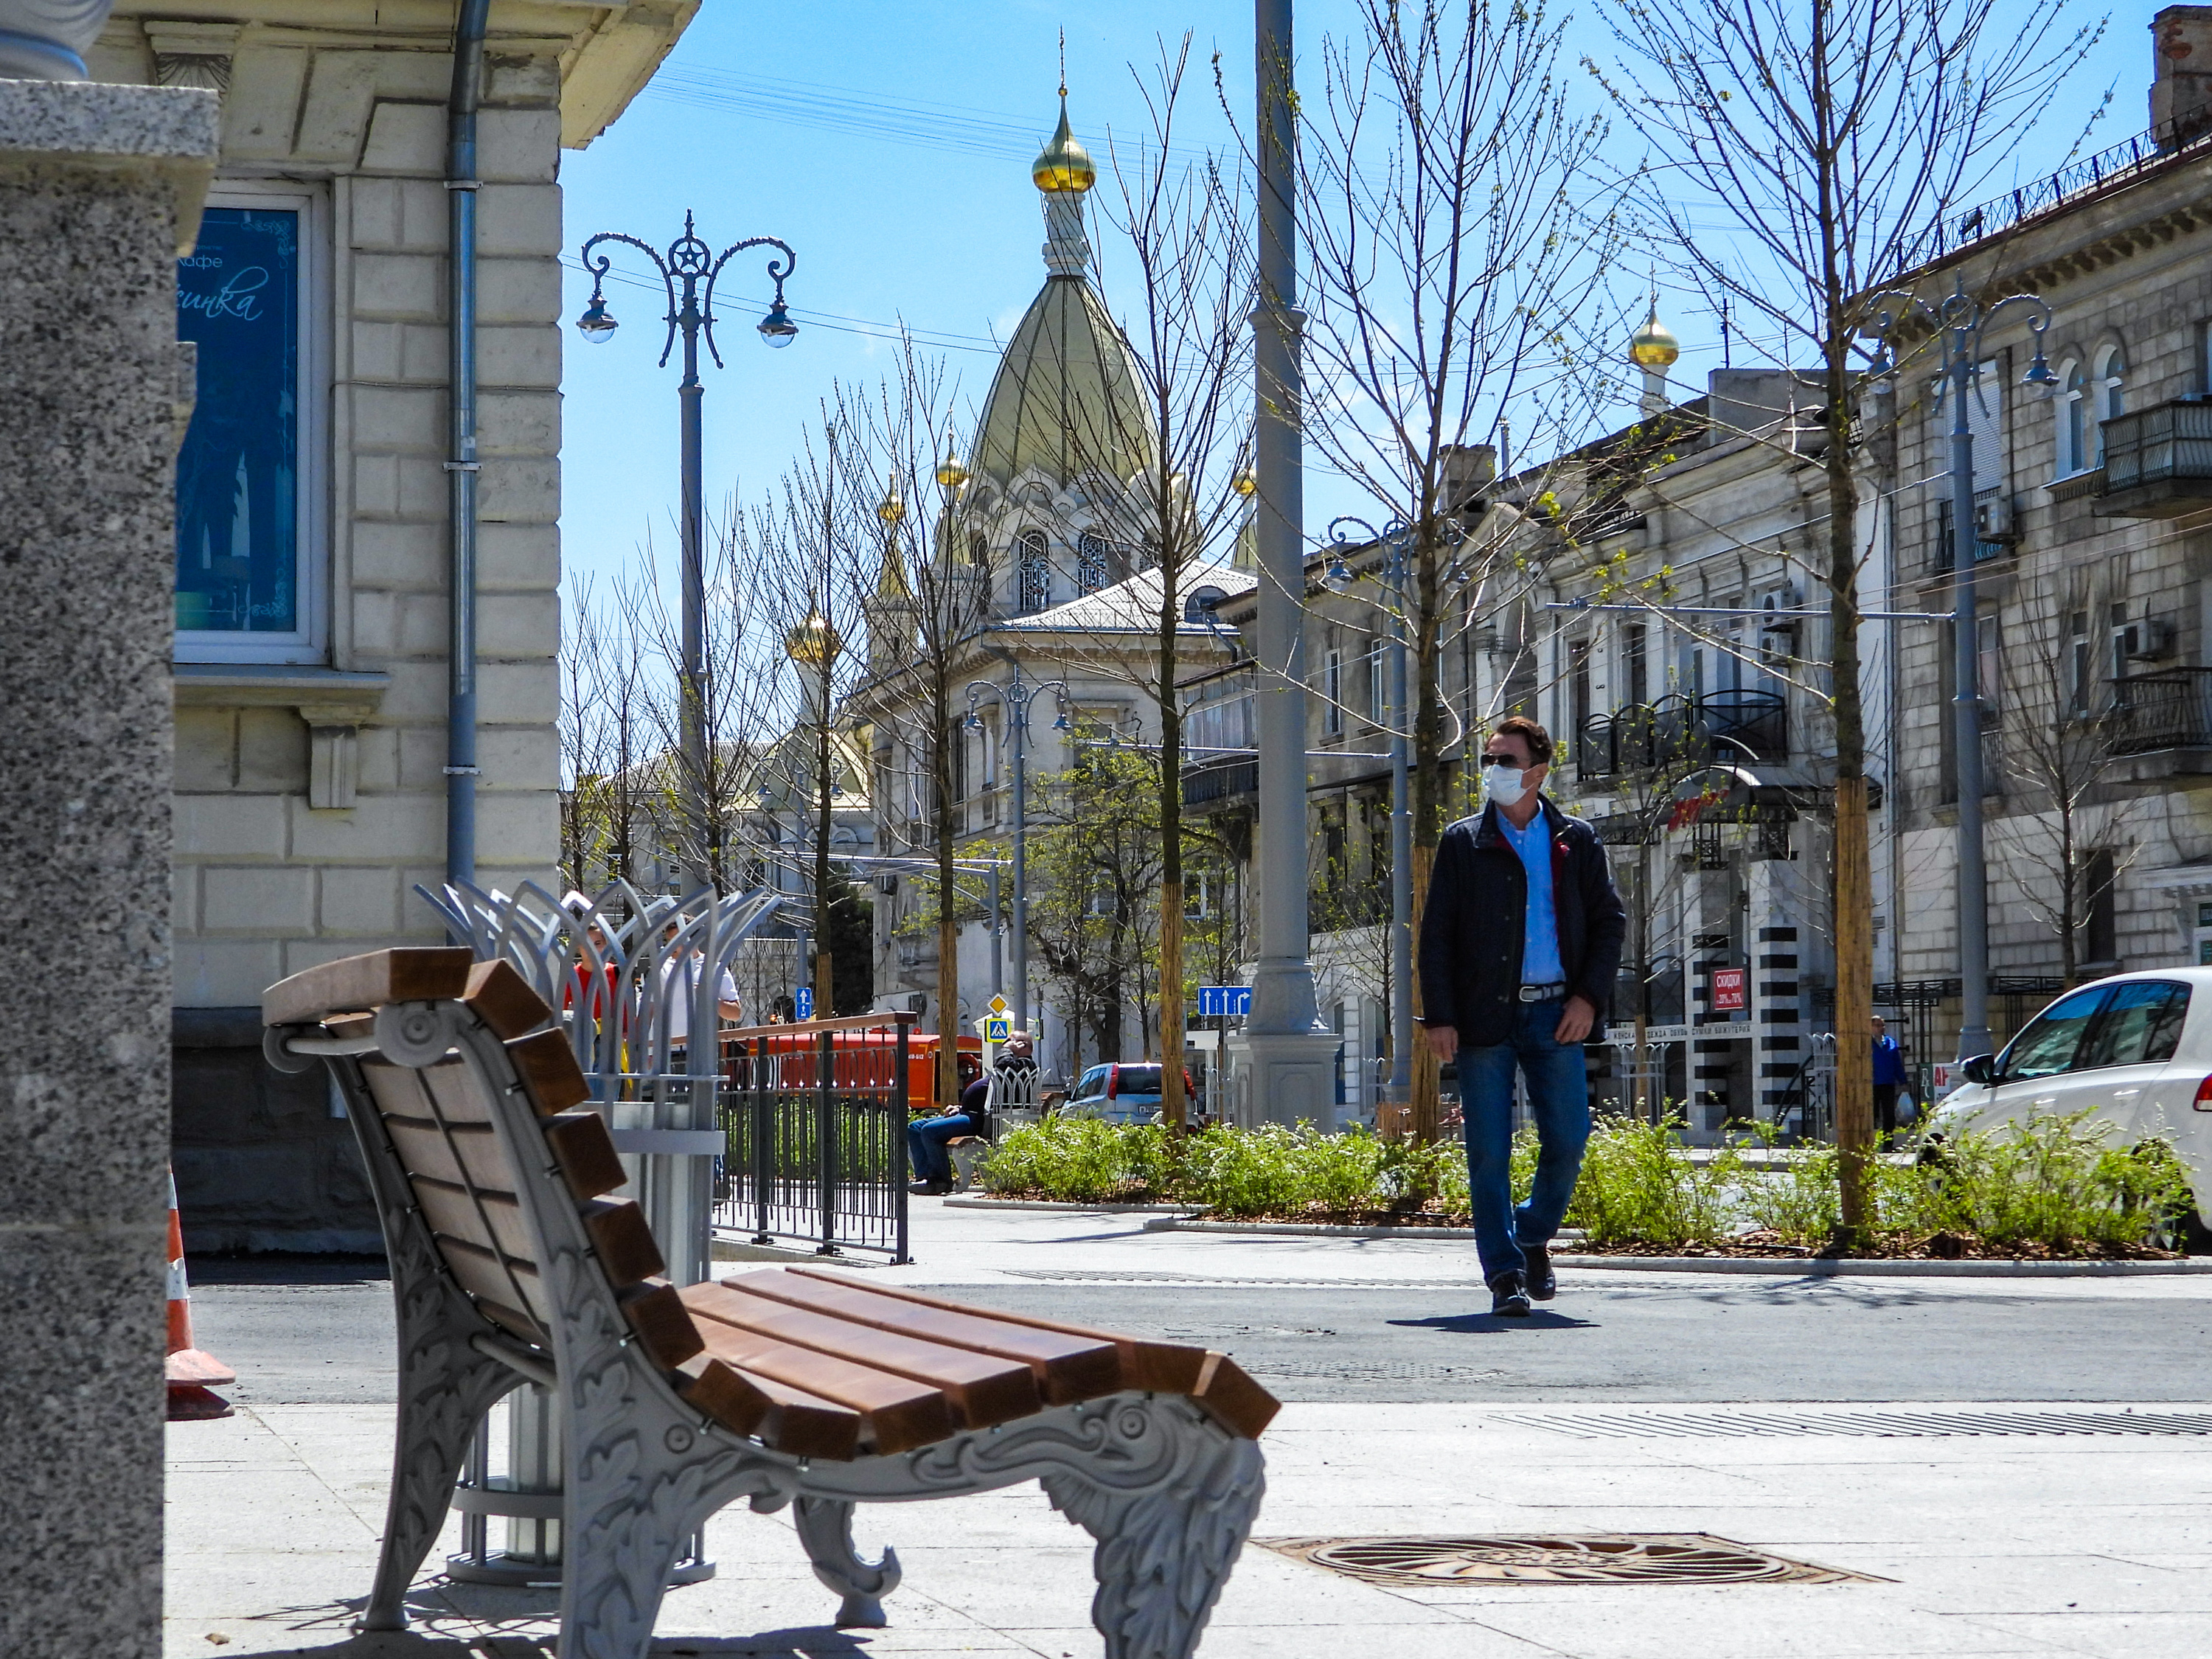 Реконструкция центральной улицы завершена в Севастополе